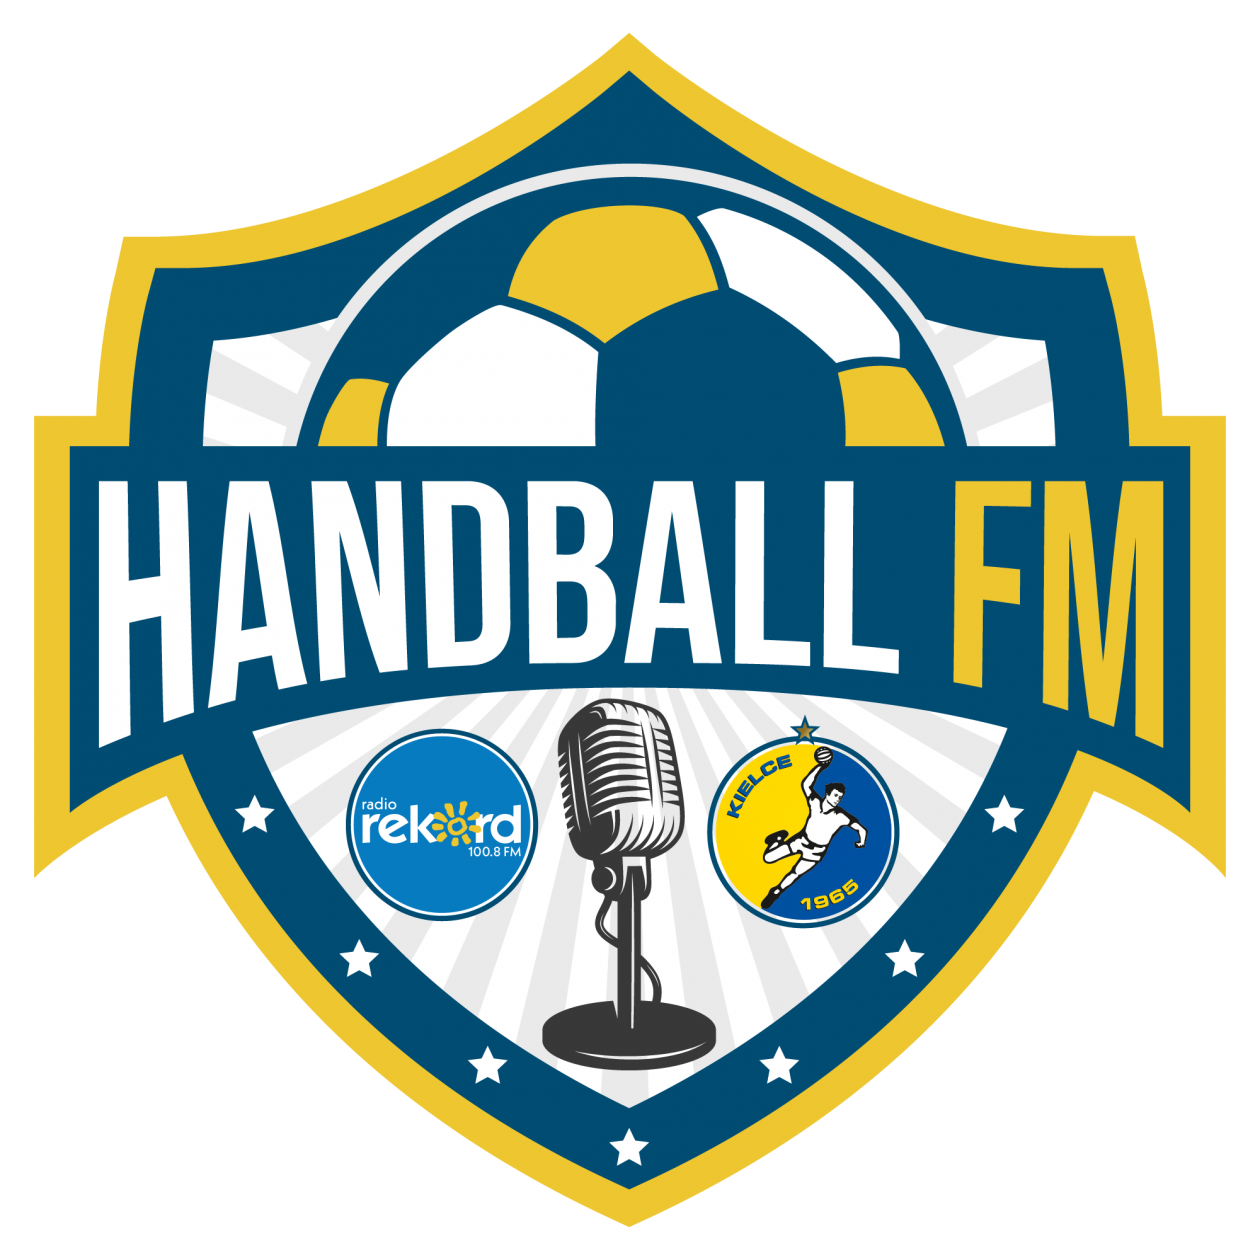 Handball FM odc. 5 Paweł Paczkowski
